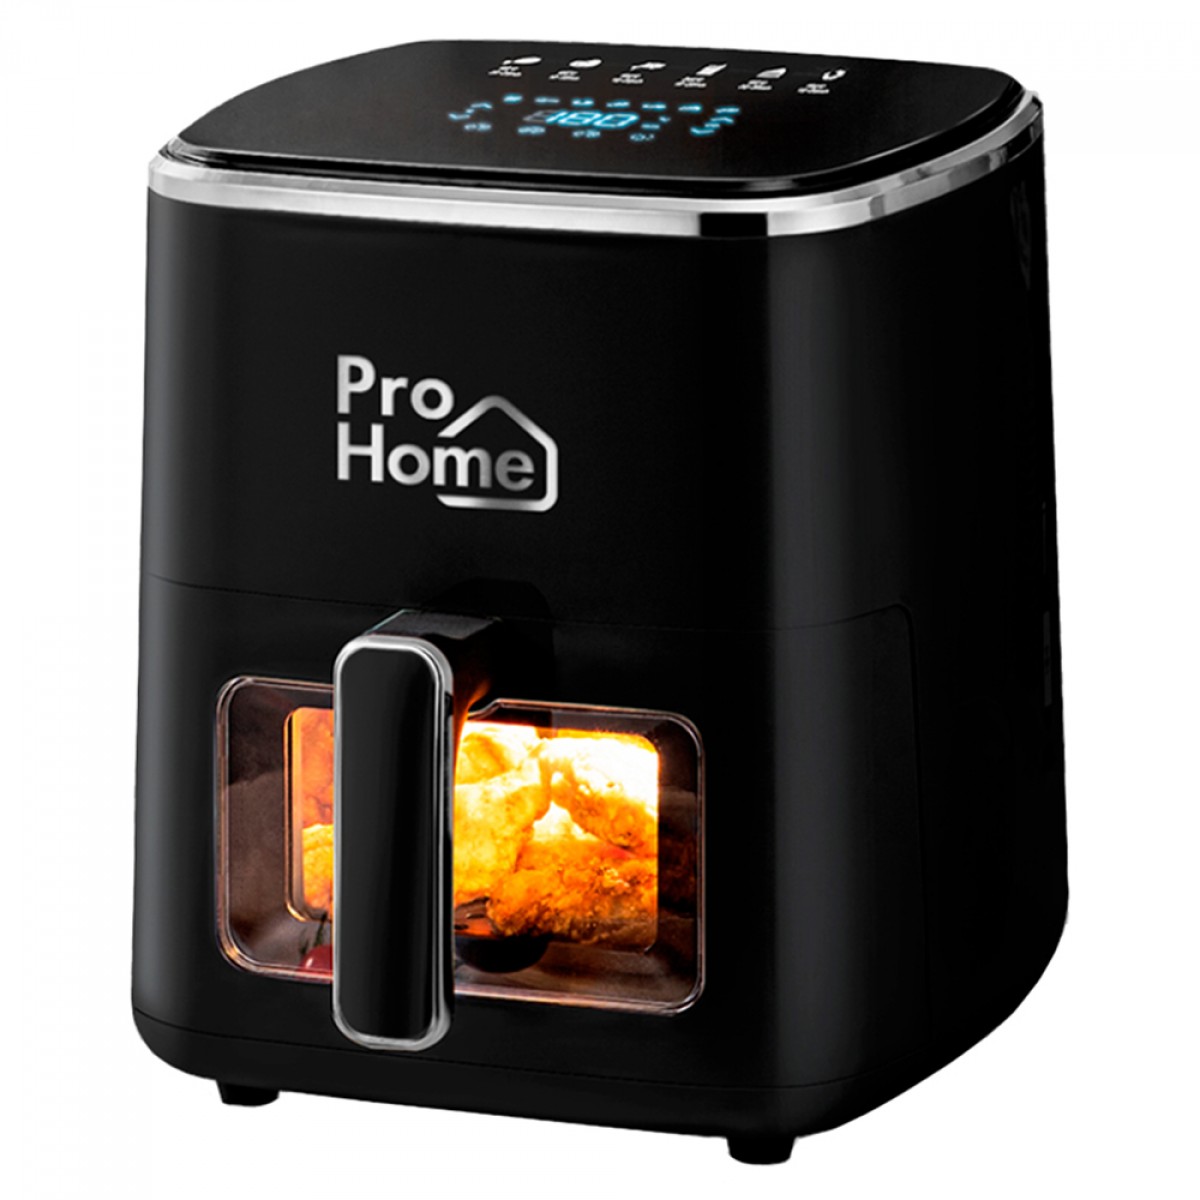 Fritadeira Elétrica Air Fryer Pro Home SuperFry, 100% Digital, Com Visor, Capacidade 5.5L, 110V, Preta   